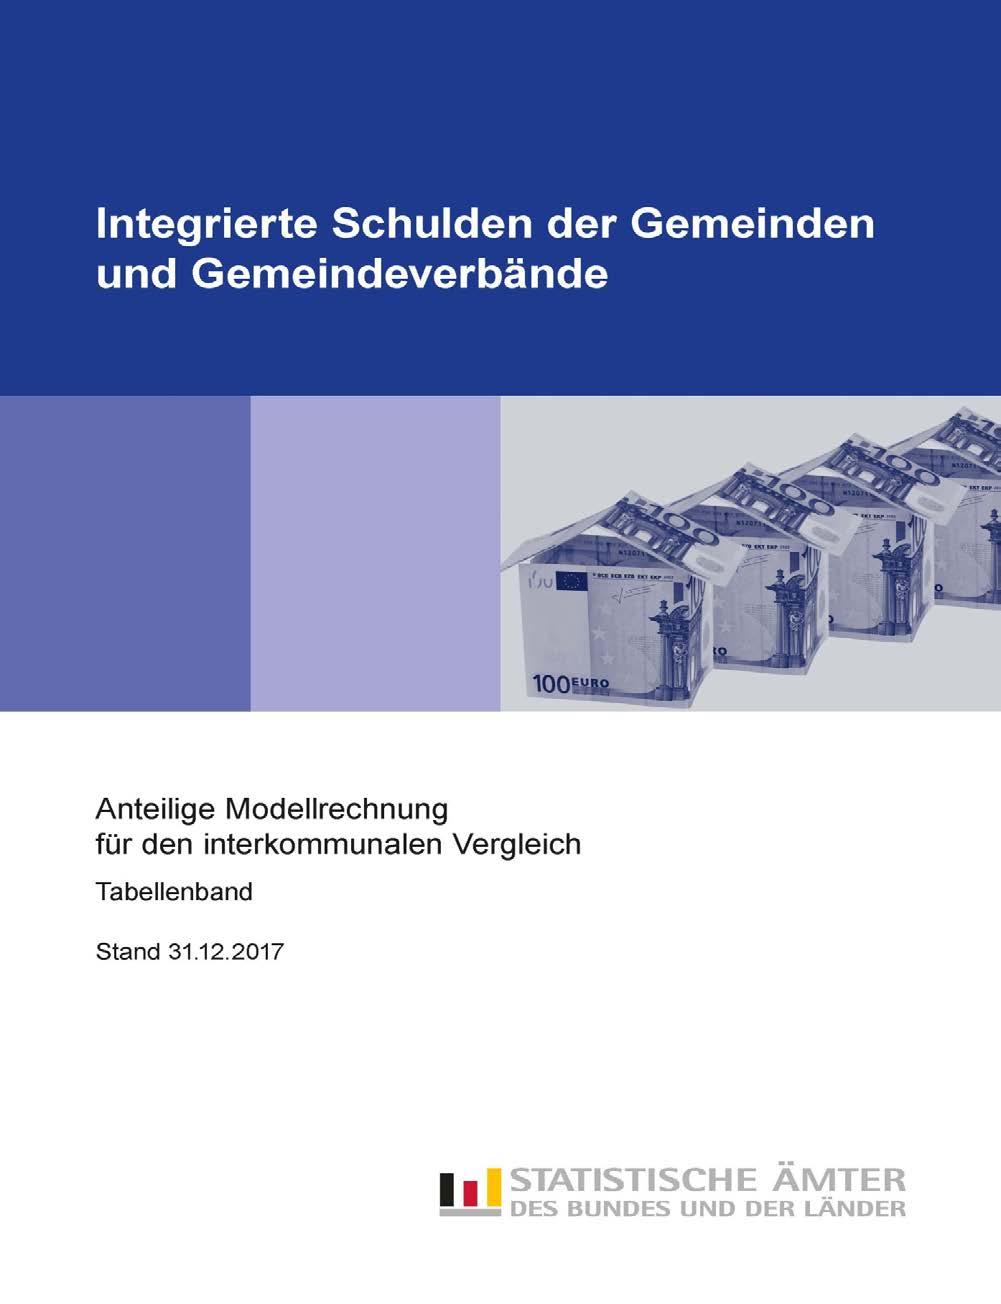 Neues aus der Statistik Statistisches Taschenbuch Niedersachsen 2018 Die 16. Ausgabe des Statistischen Taschenbuchs Niedersachsen liegt vor.